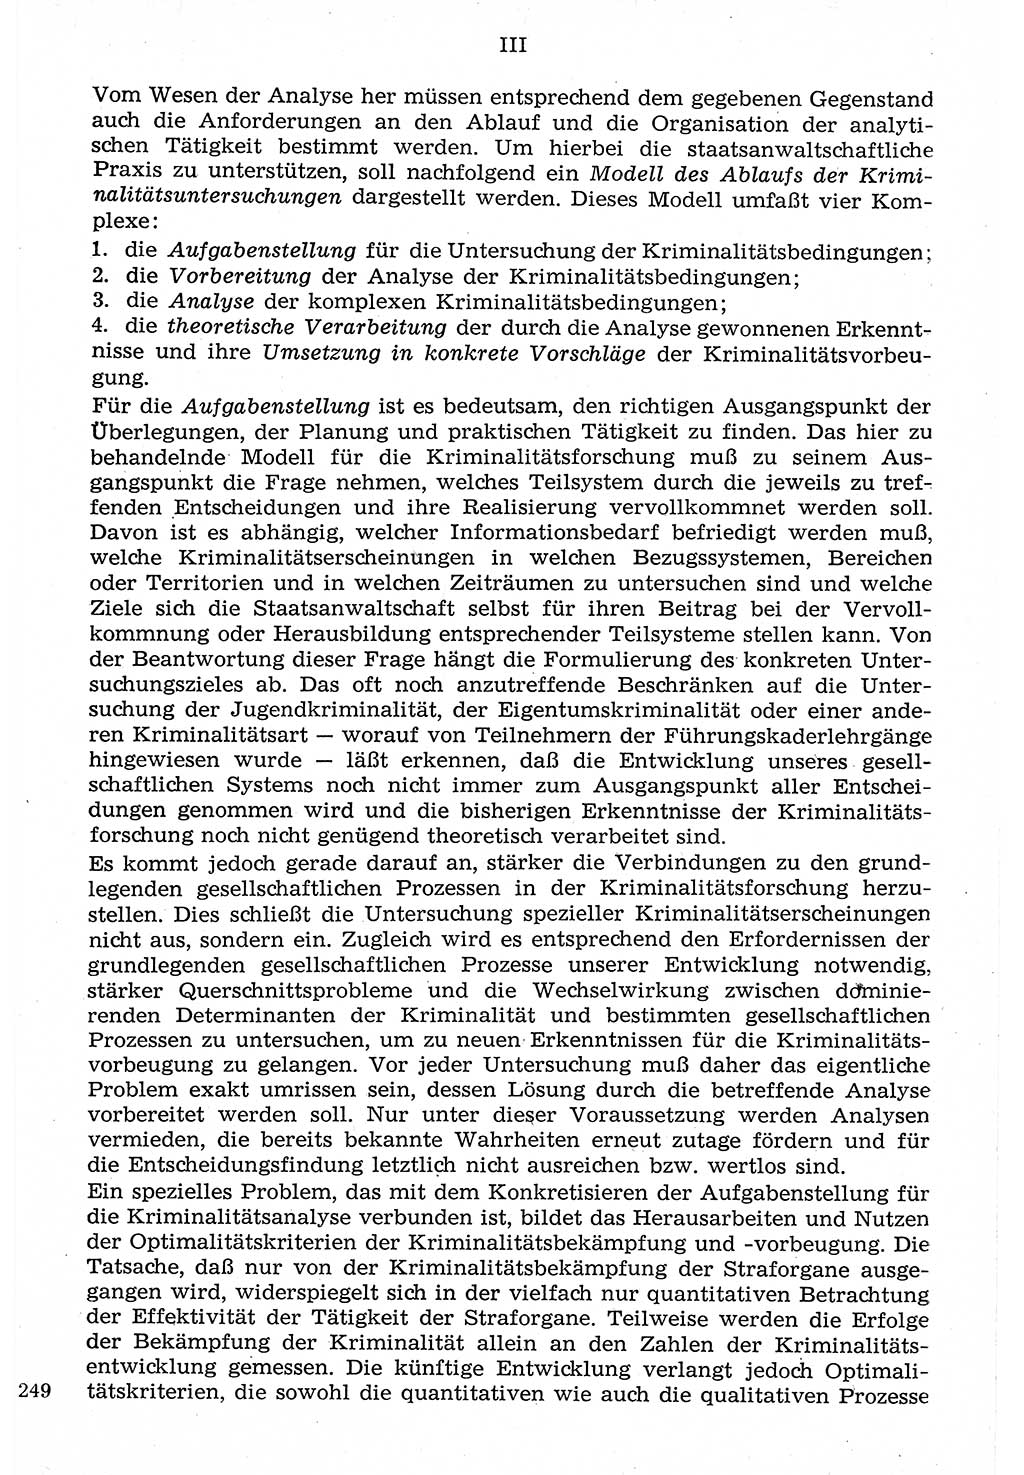 Staat und Recht (StuR), 17. Jahrgang [Deutsche Demokratische Republik (DDR)] 1968, Seite 249 (StuR DDR 1968, S. 249)